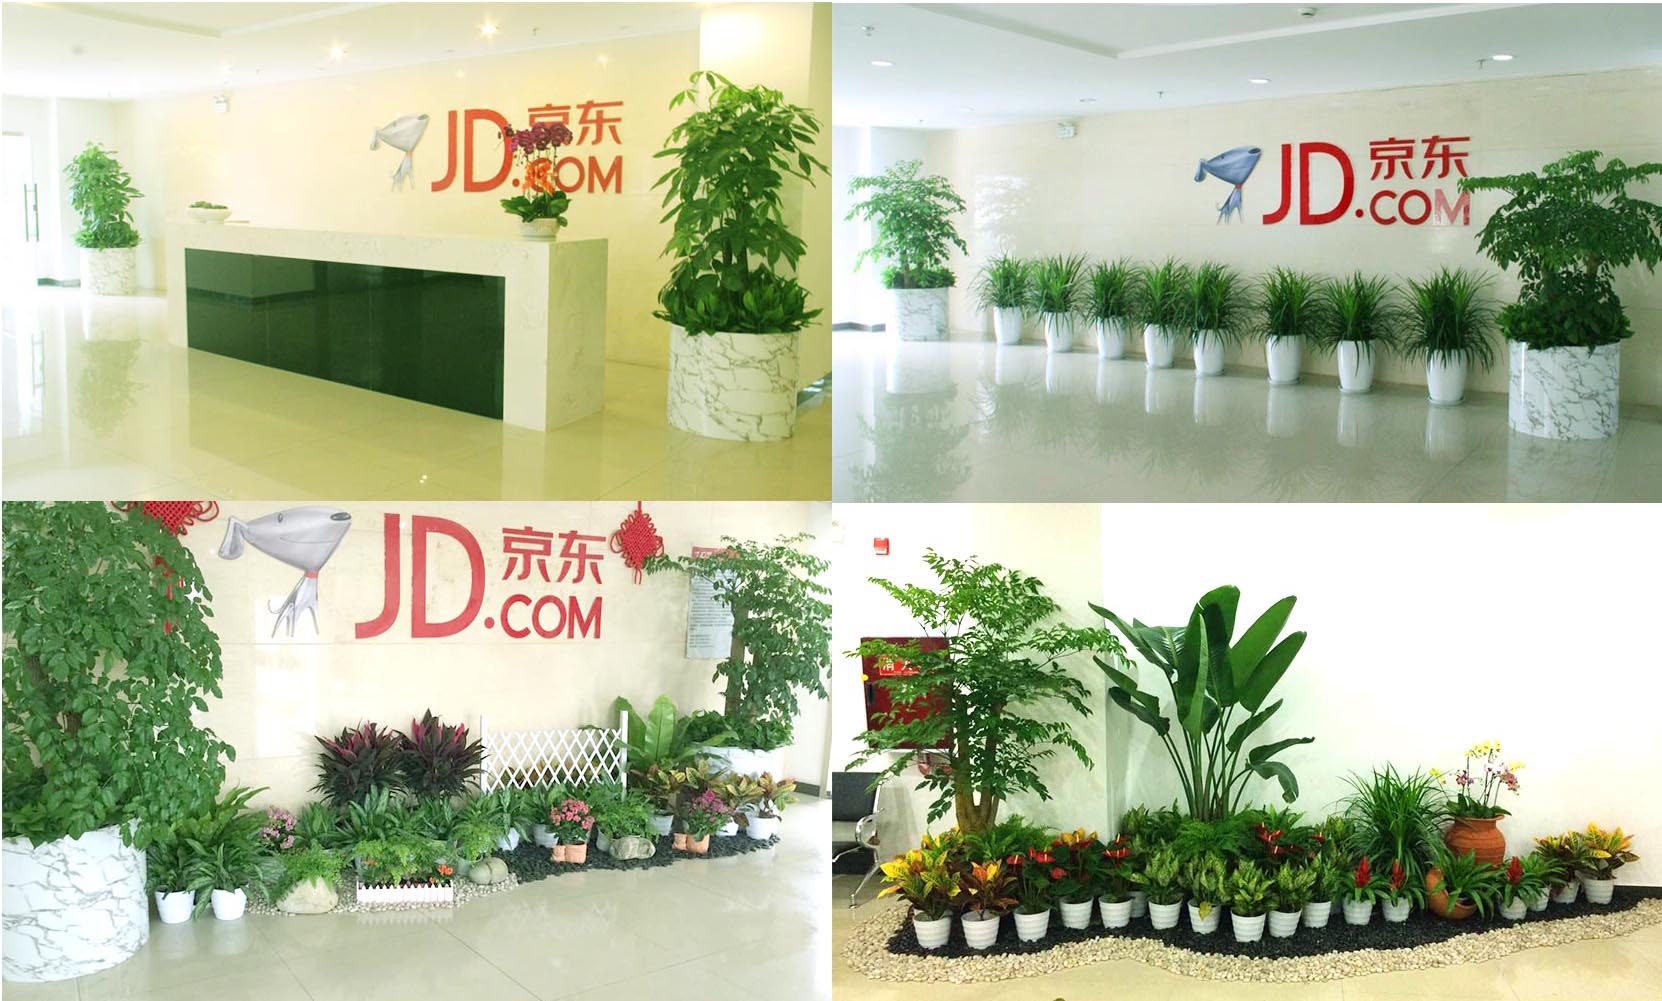 京东集团室内植物租赁项目-上海雅腾绿化有限公司